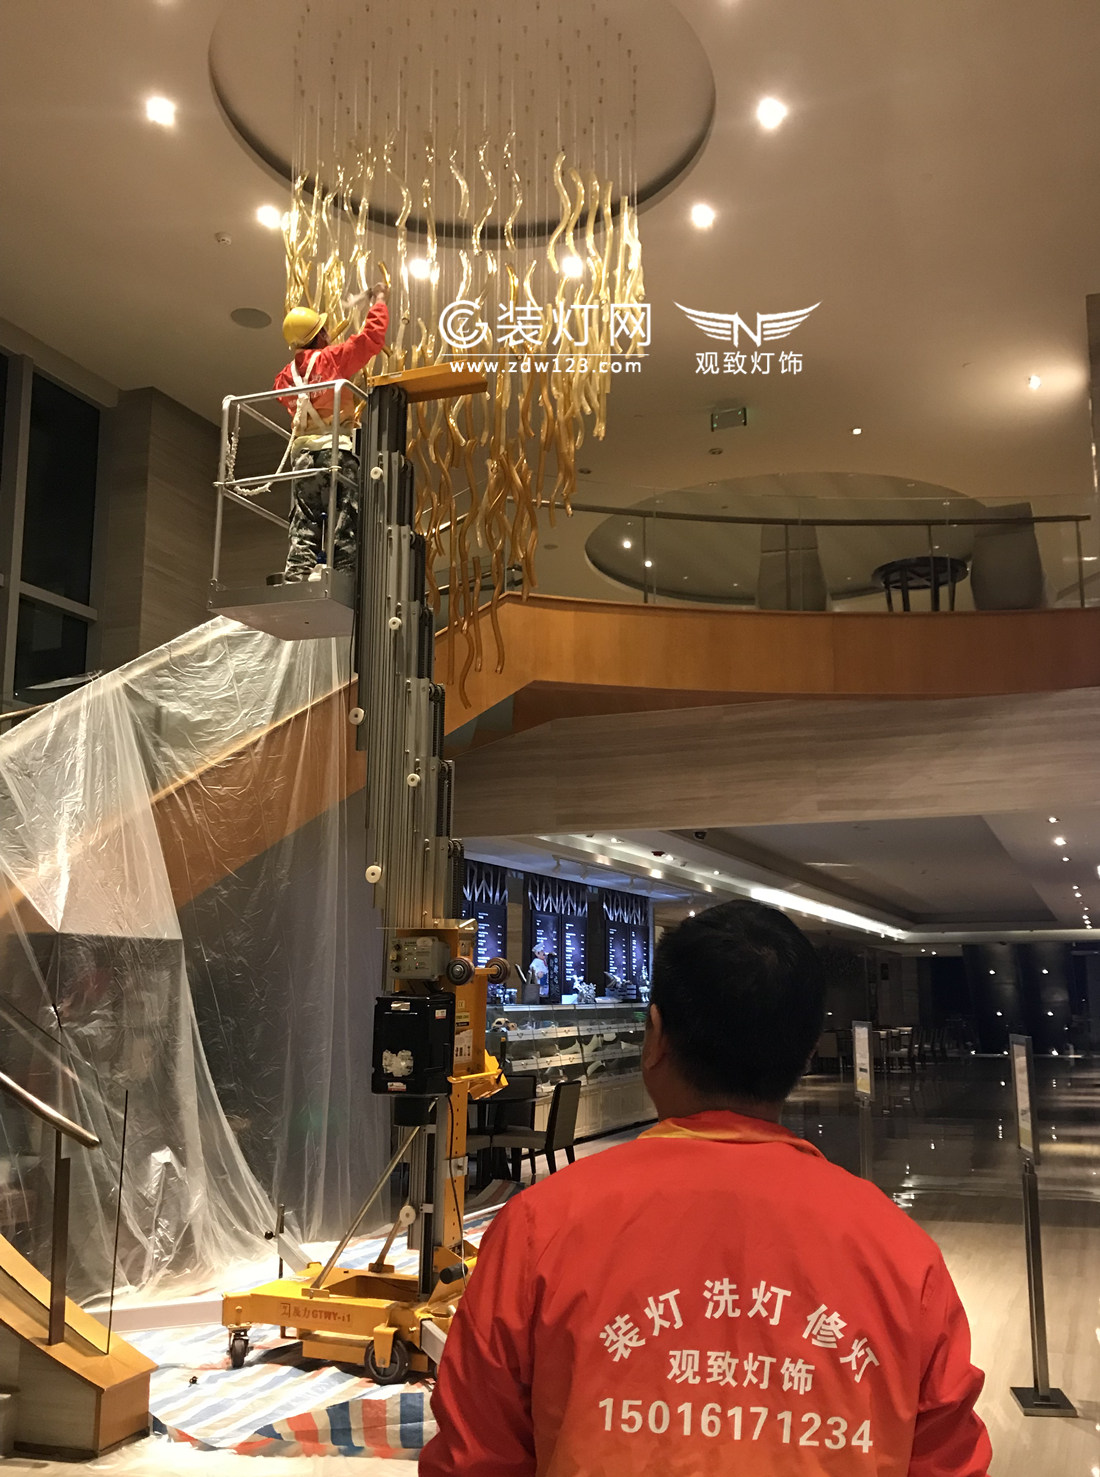 广州灯具清洗公司正在清洗保利假日酒店灯具